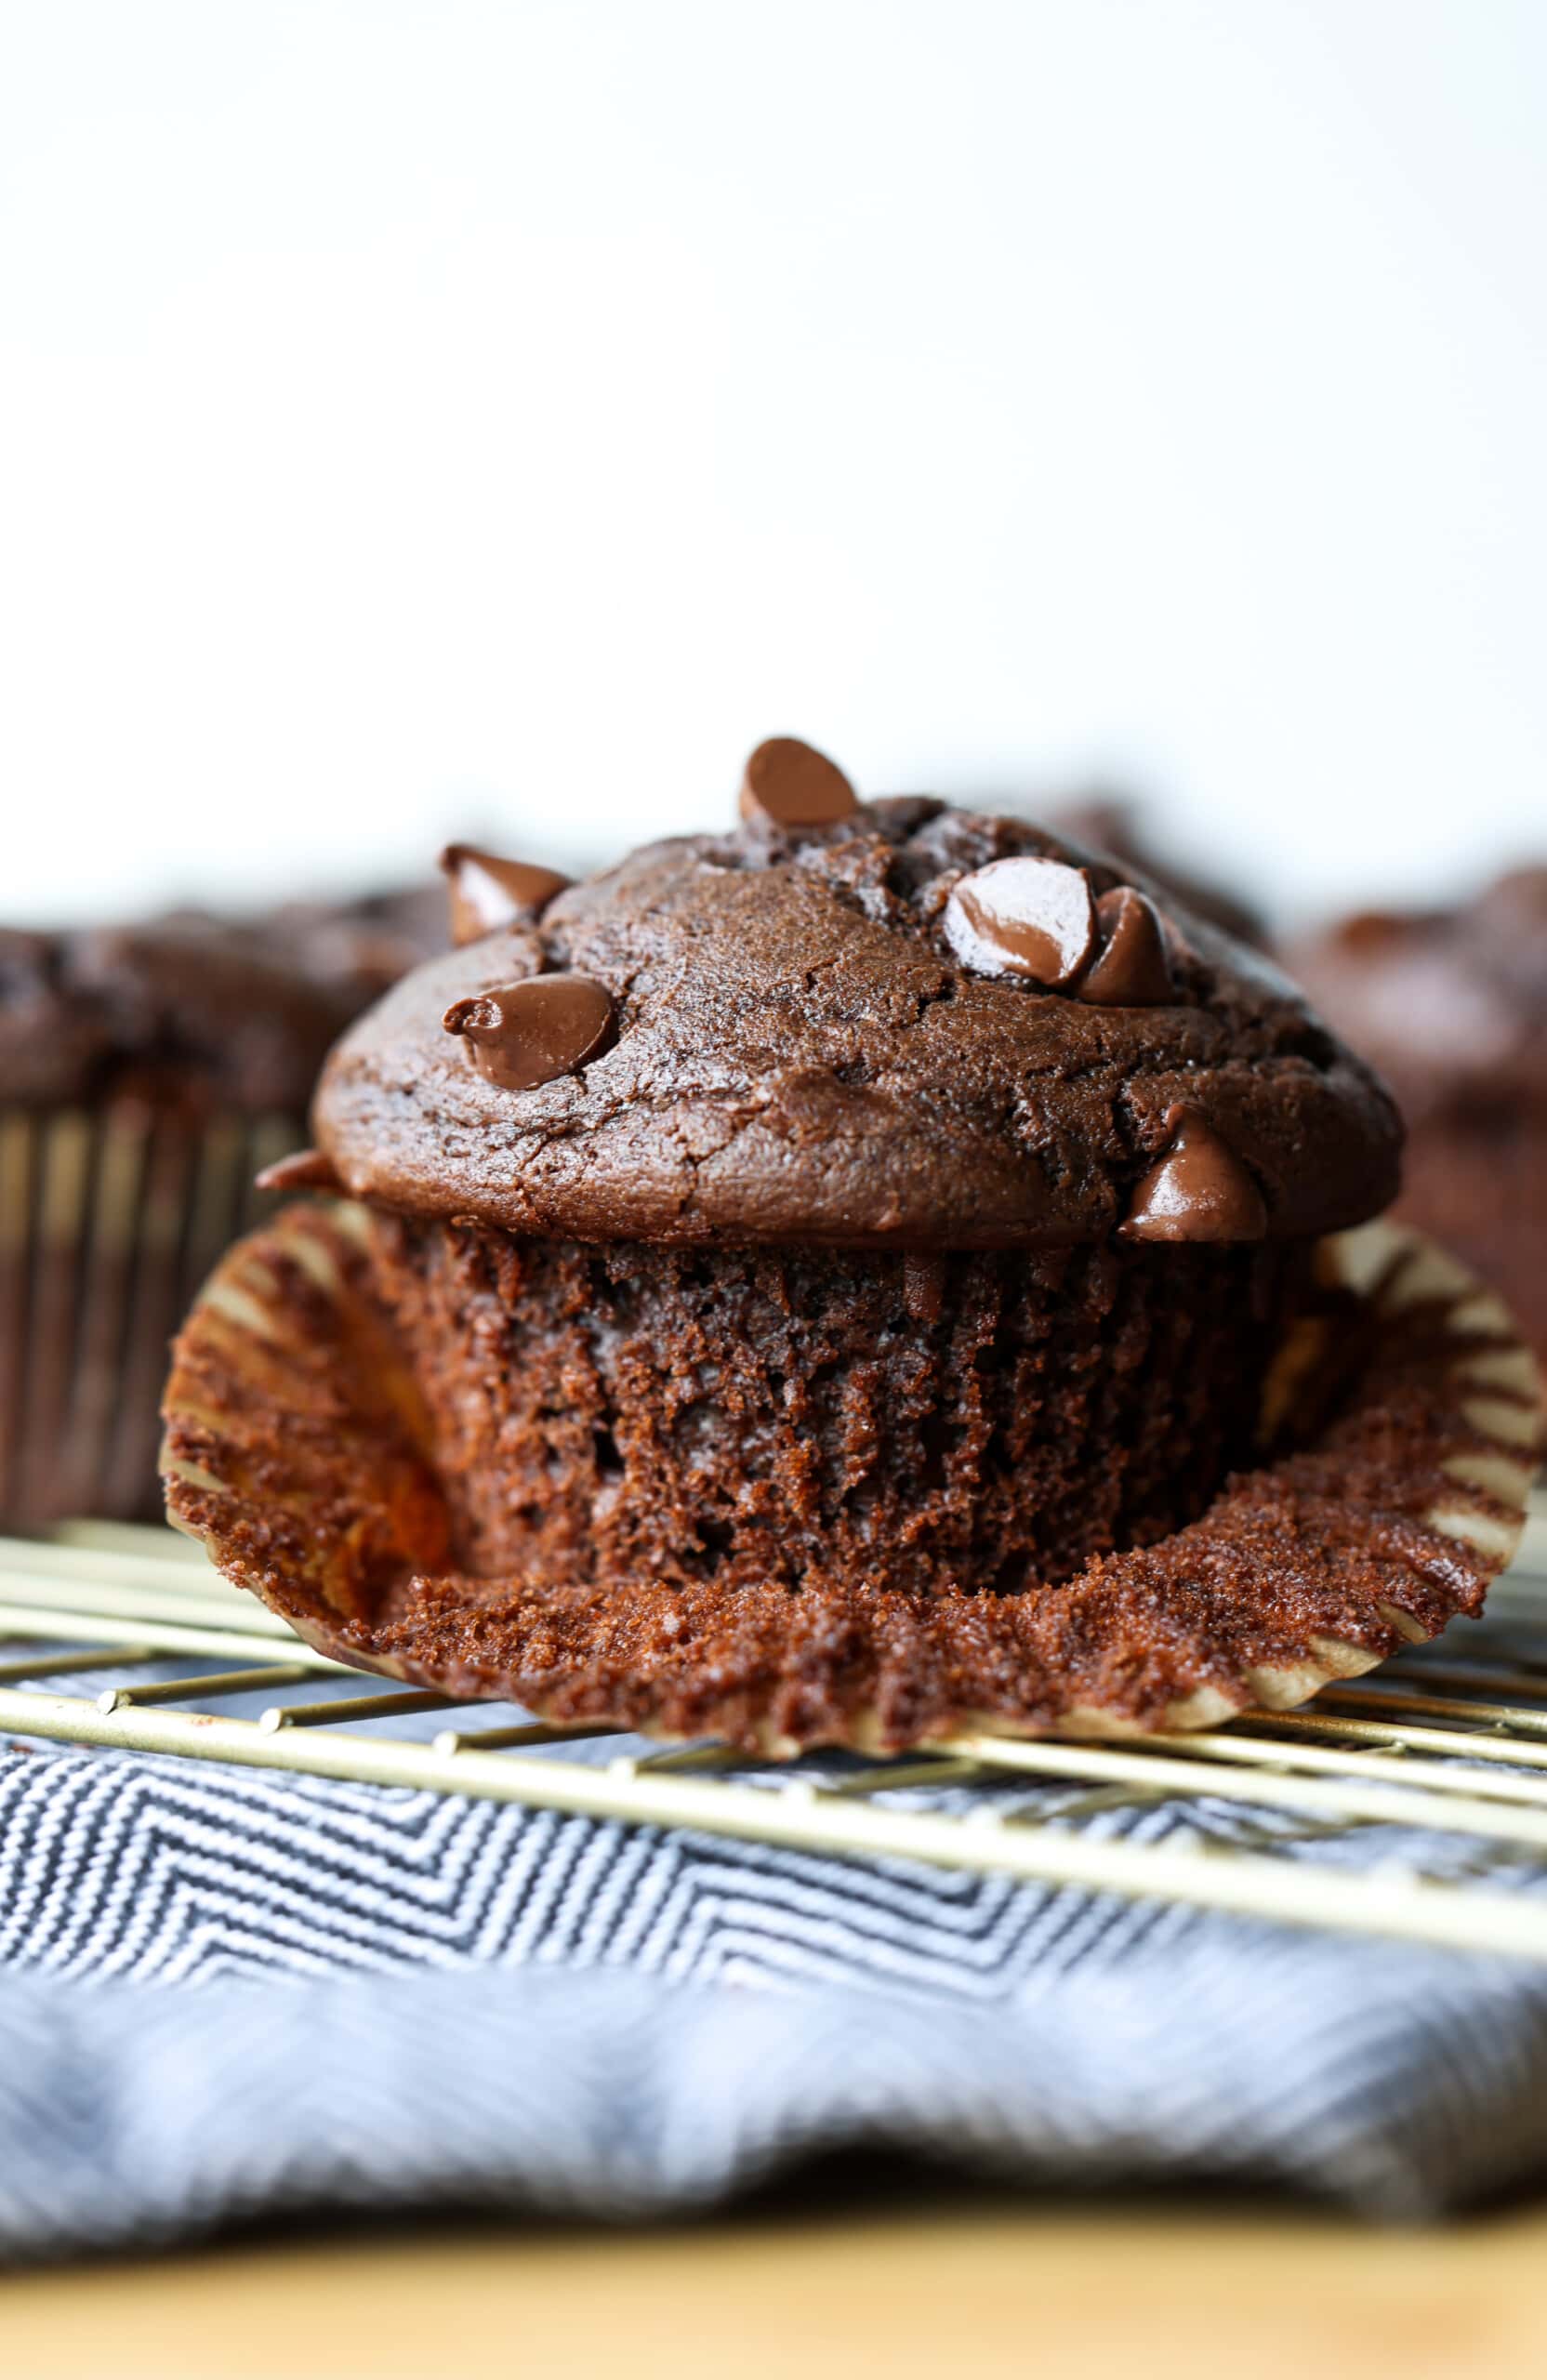 Muffin au chocolat avec du chocolat non emballé